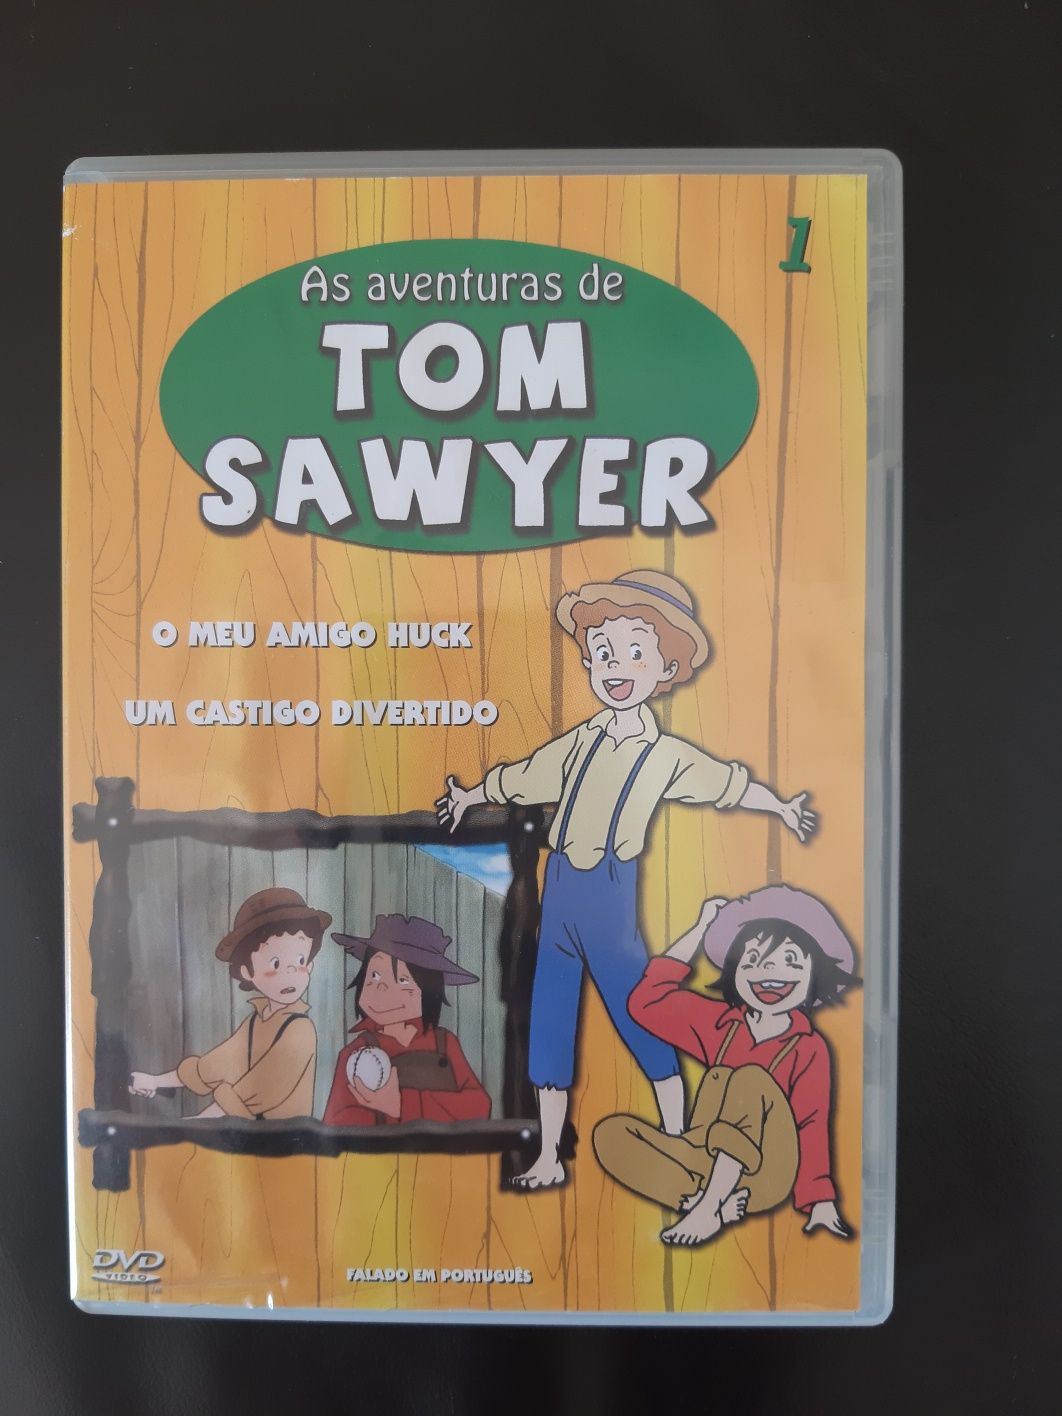 DVD da coleção Tom Sawyer